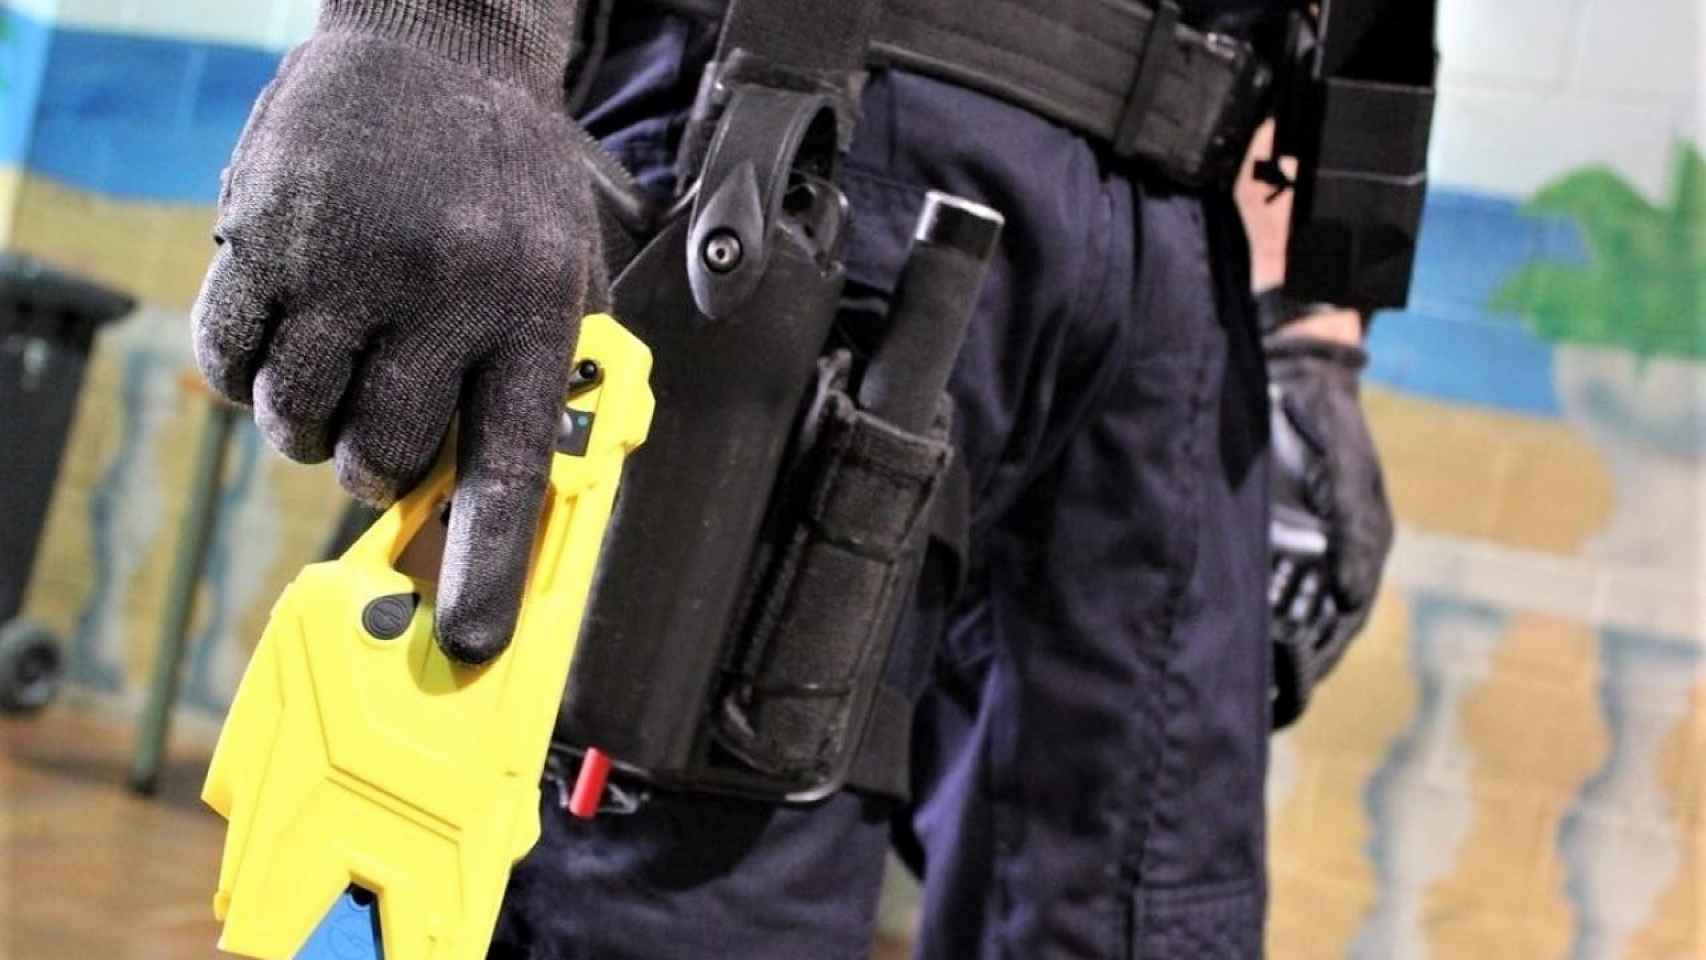 Un agente de los Mossos d'Esquadra sujeta una pistola eléctrica / EP